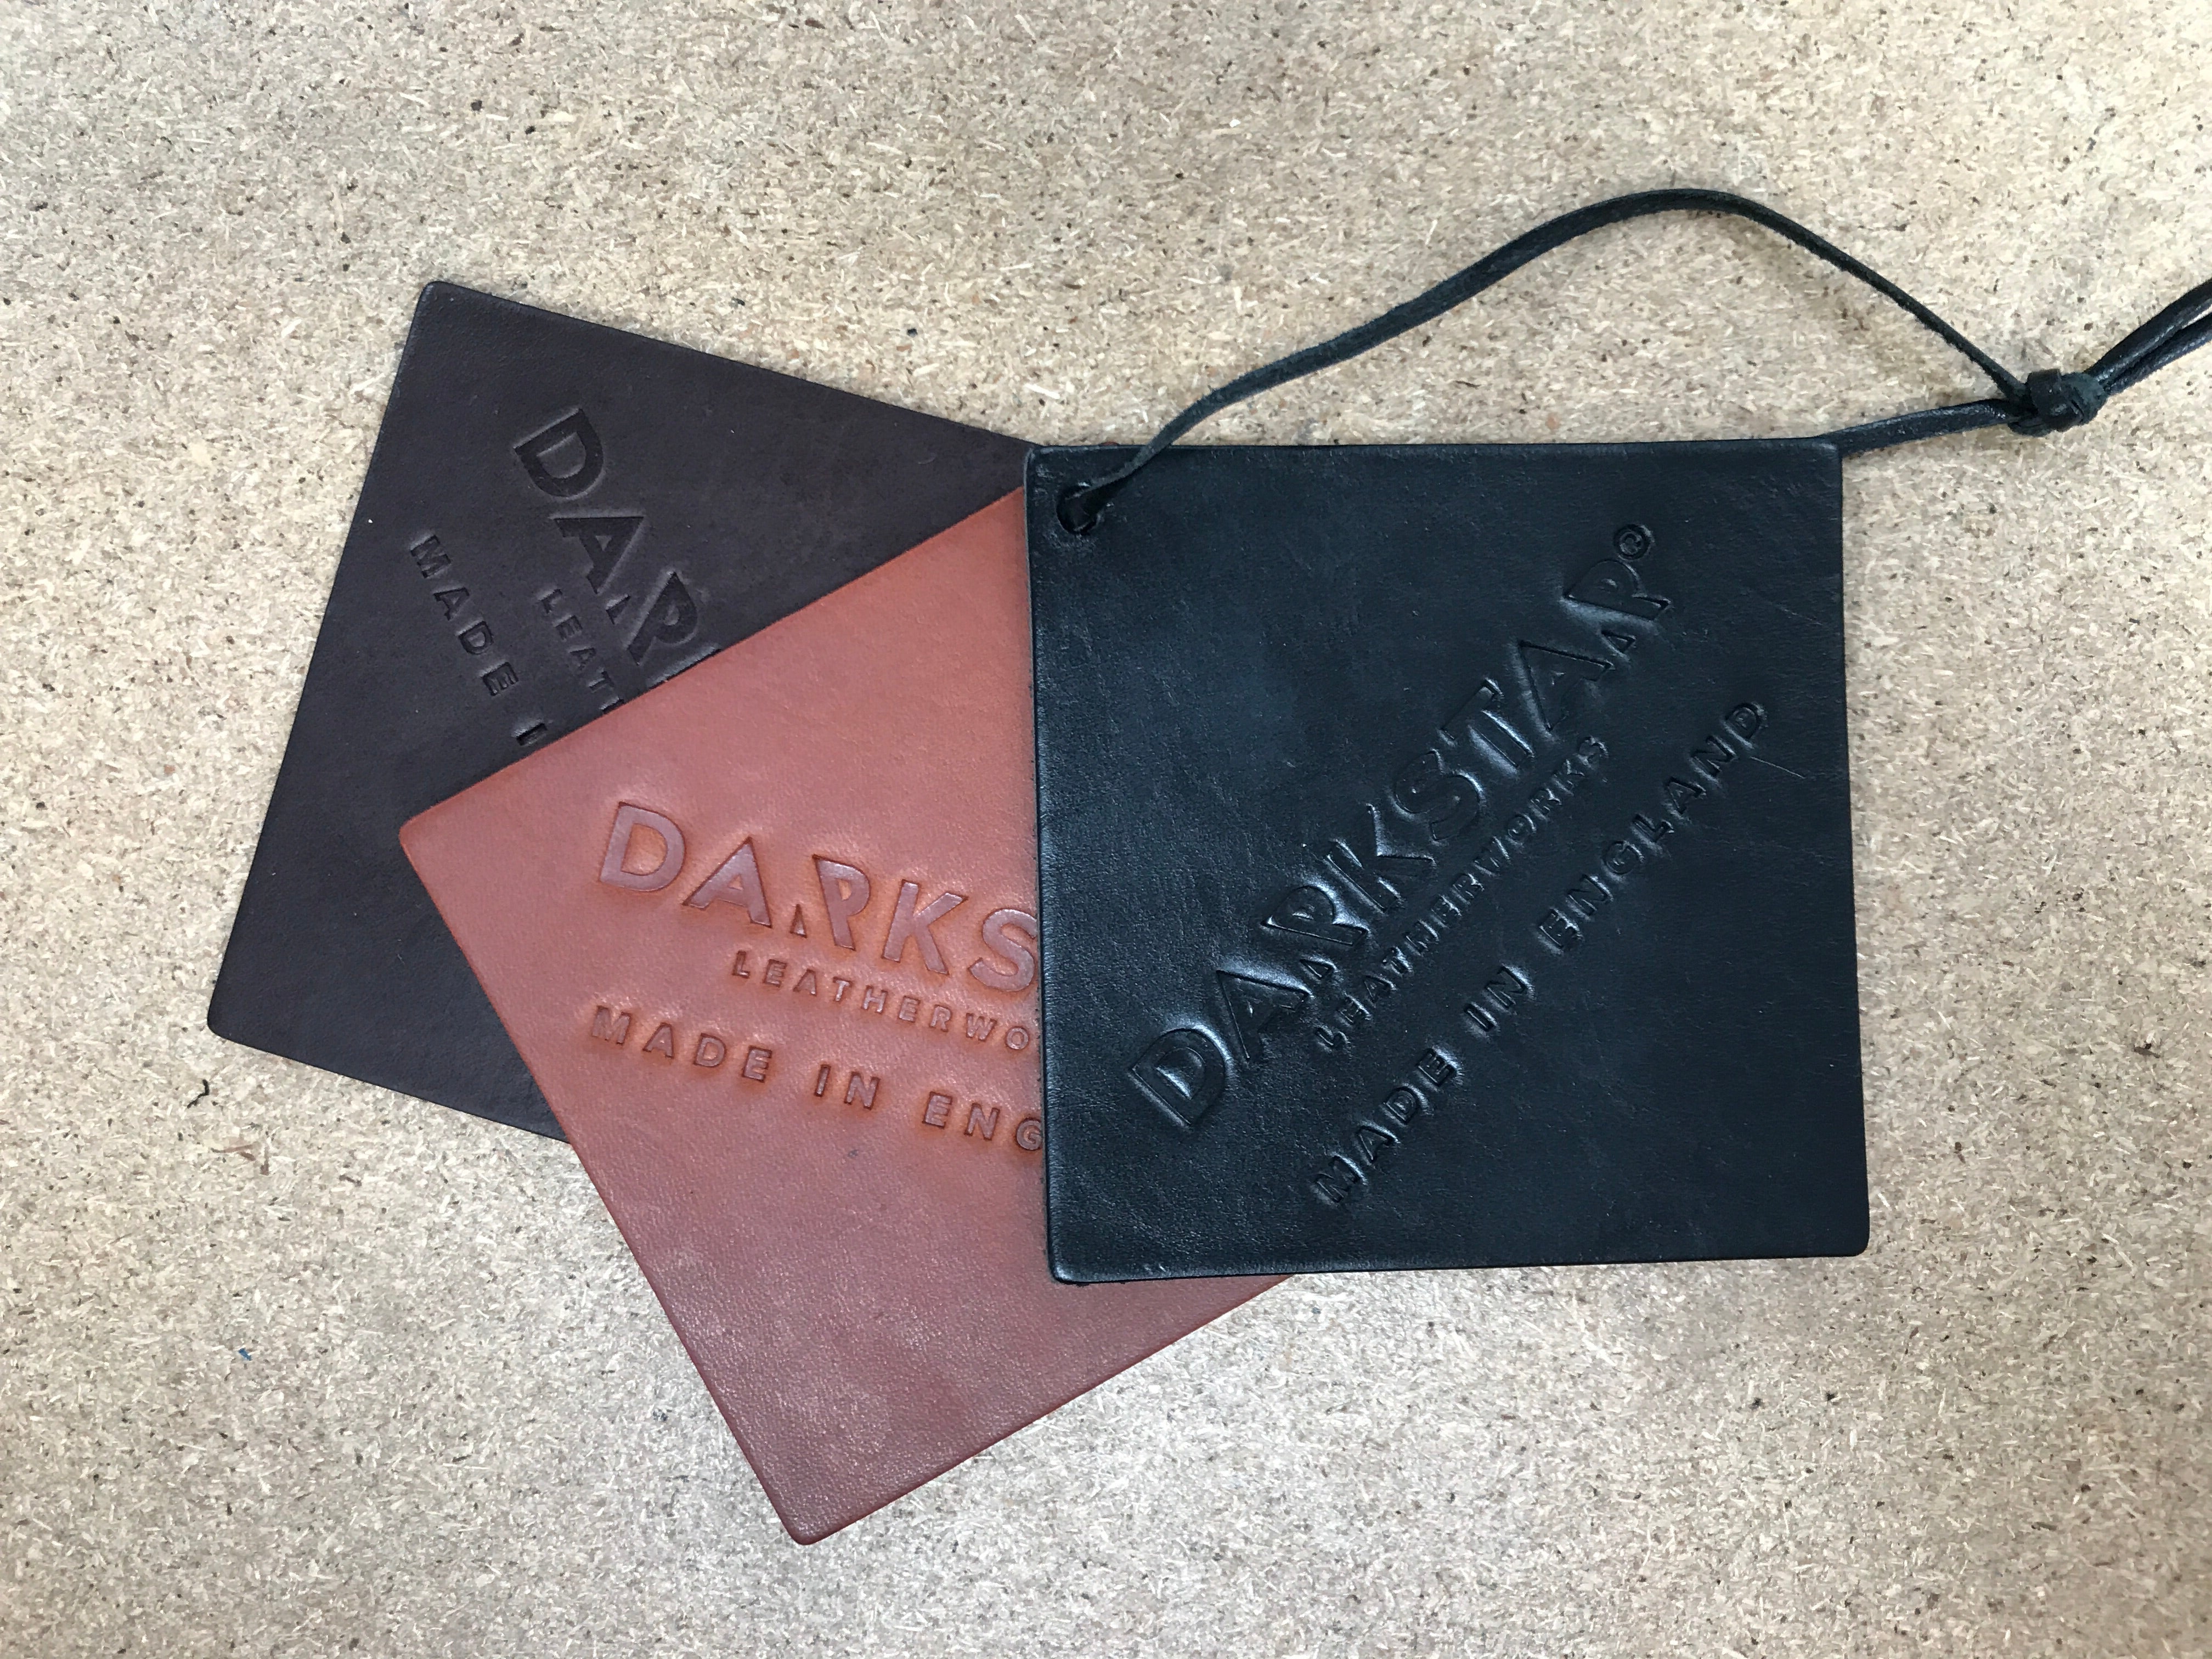 Darkstar - Pioneer Briefcase/Satchel